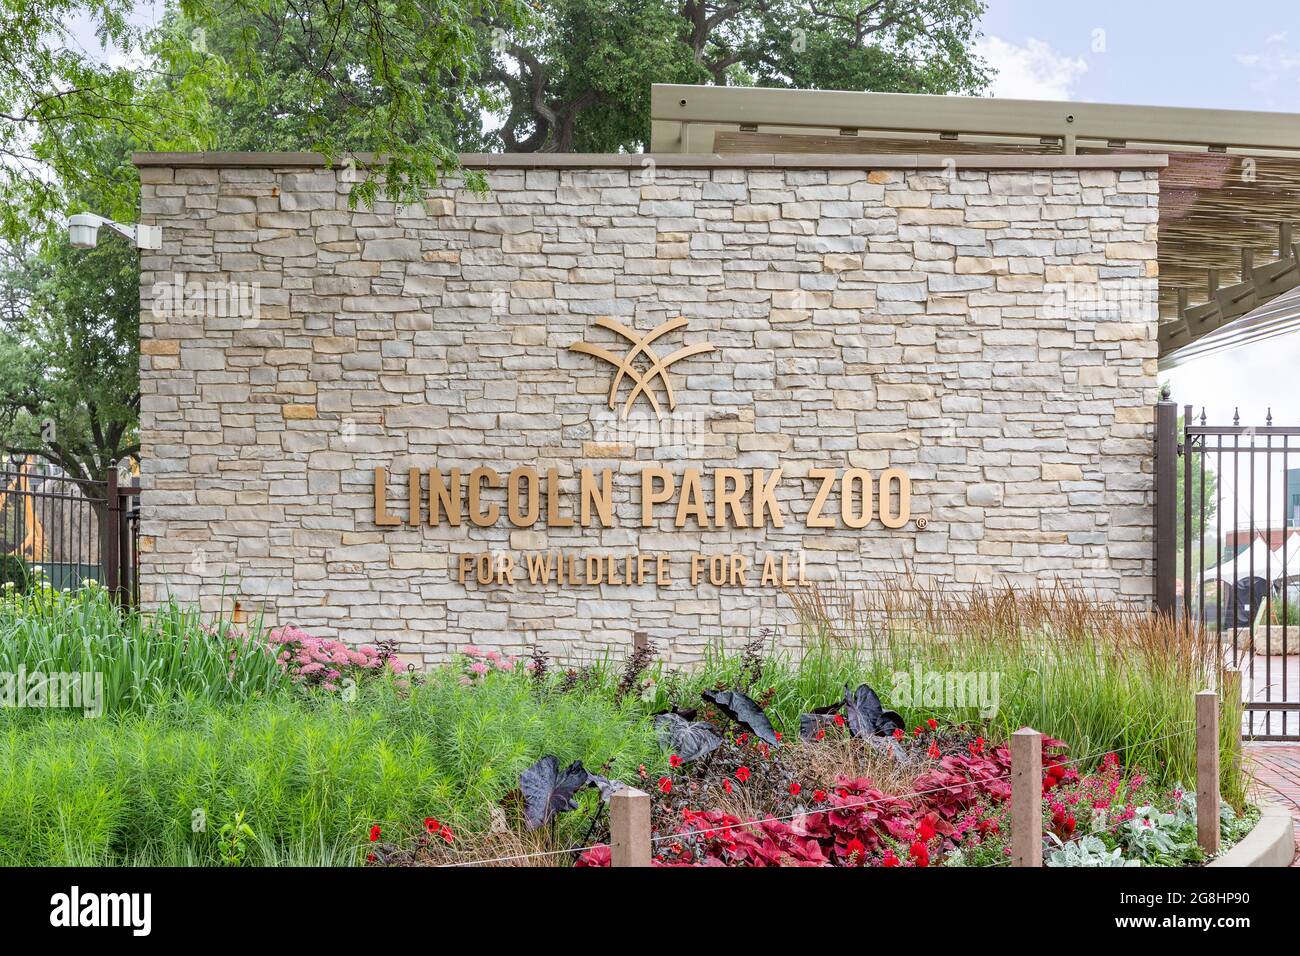 L'extérieur du zoo de Lincoln Park dans le quartier de Lincoln Park à Chicago. Ce zoo est gratuit toute l'année et compte 1,100 animaux. Banque D'Images